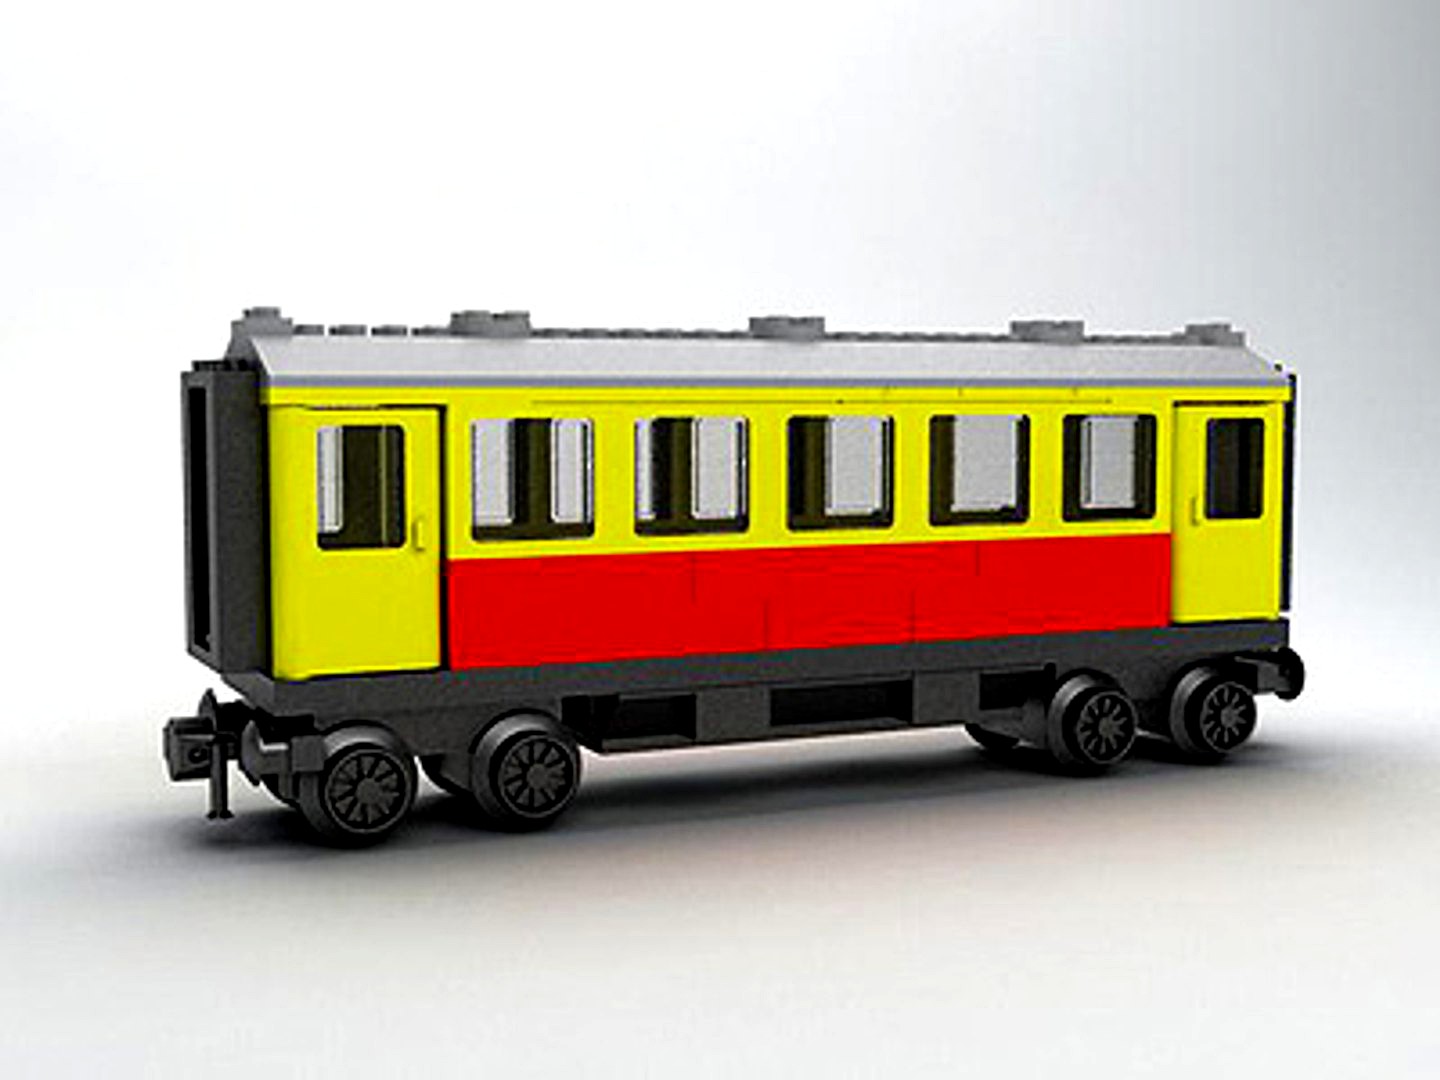 LEGO DB (DEUTSCHE BAHN) PASSENGER TRAIN